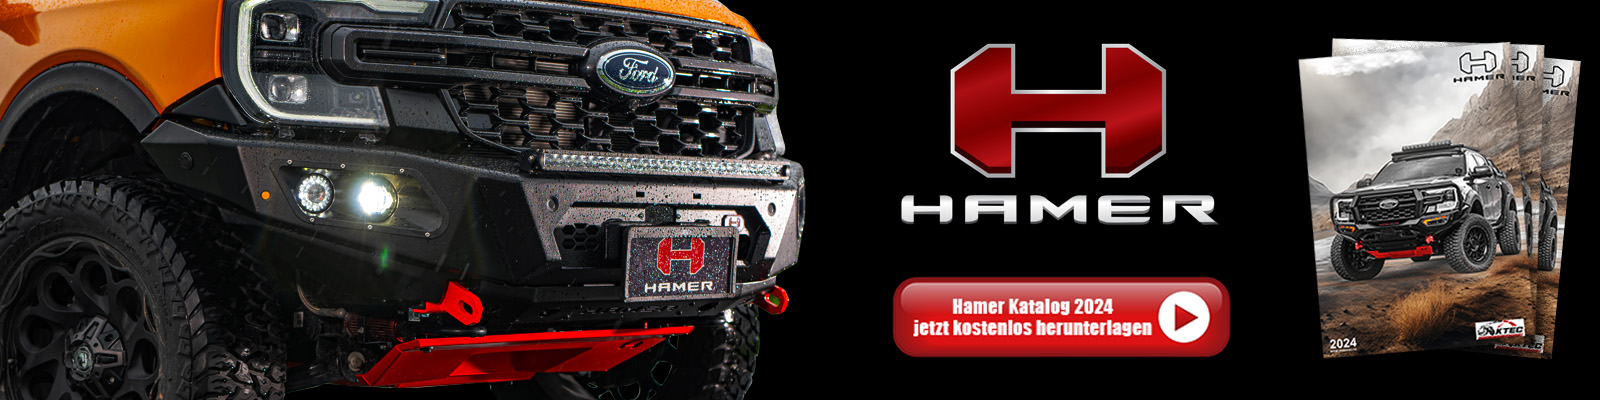 hamer catalog banner pic 1